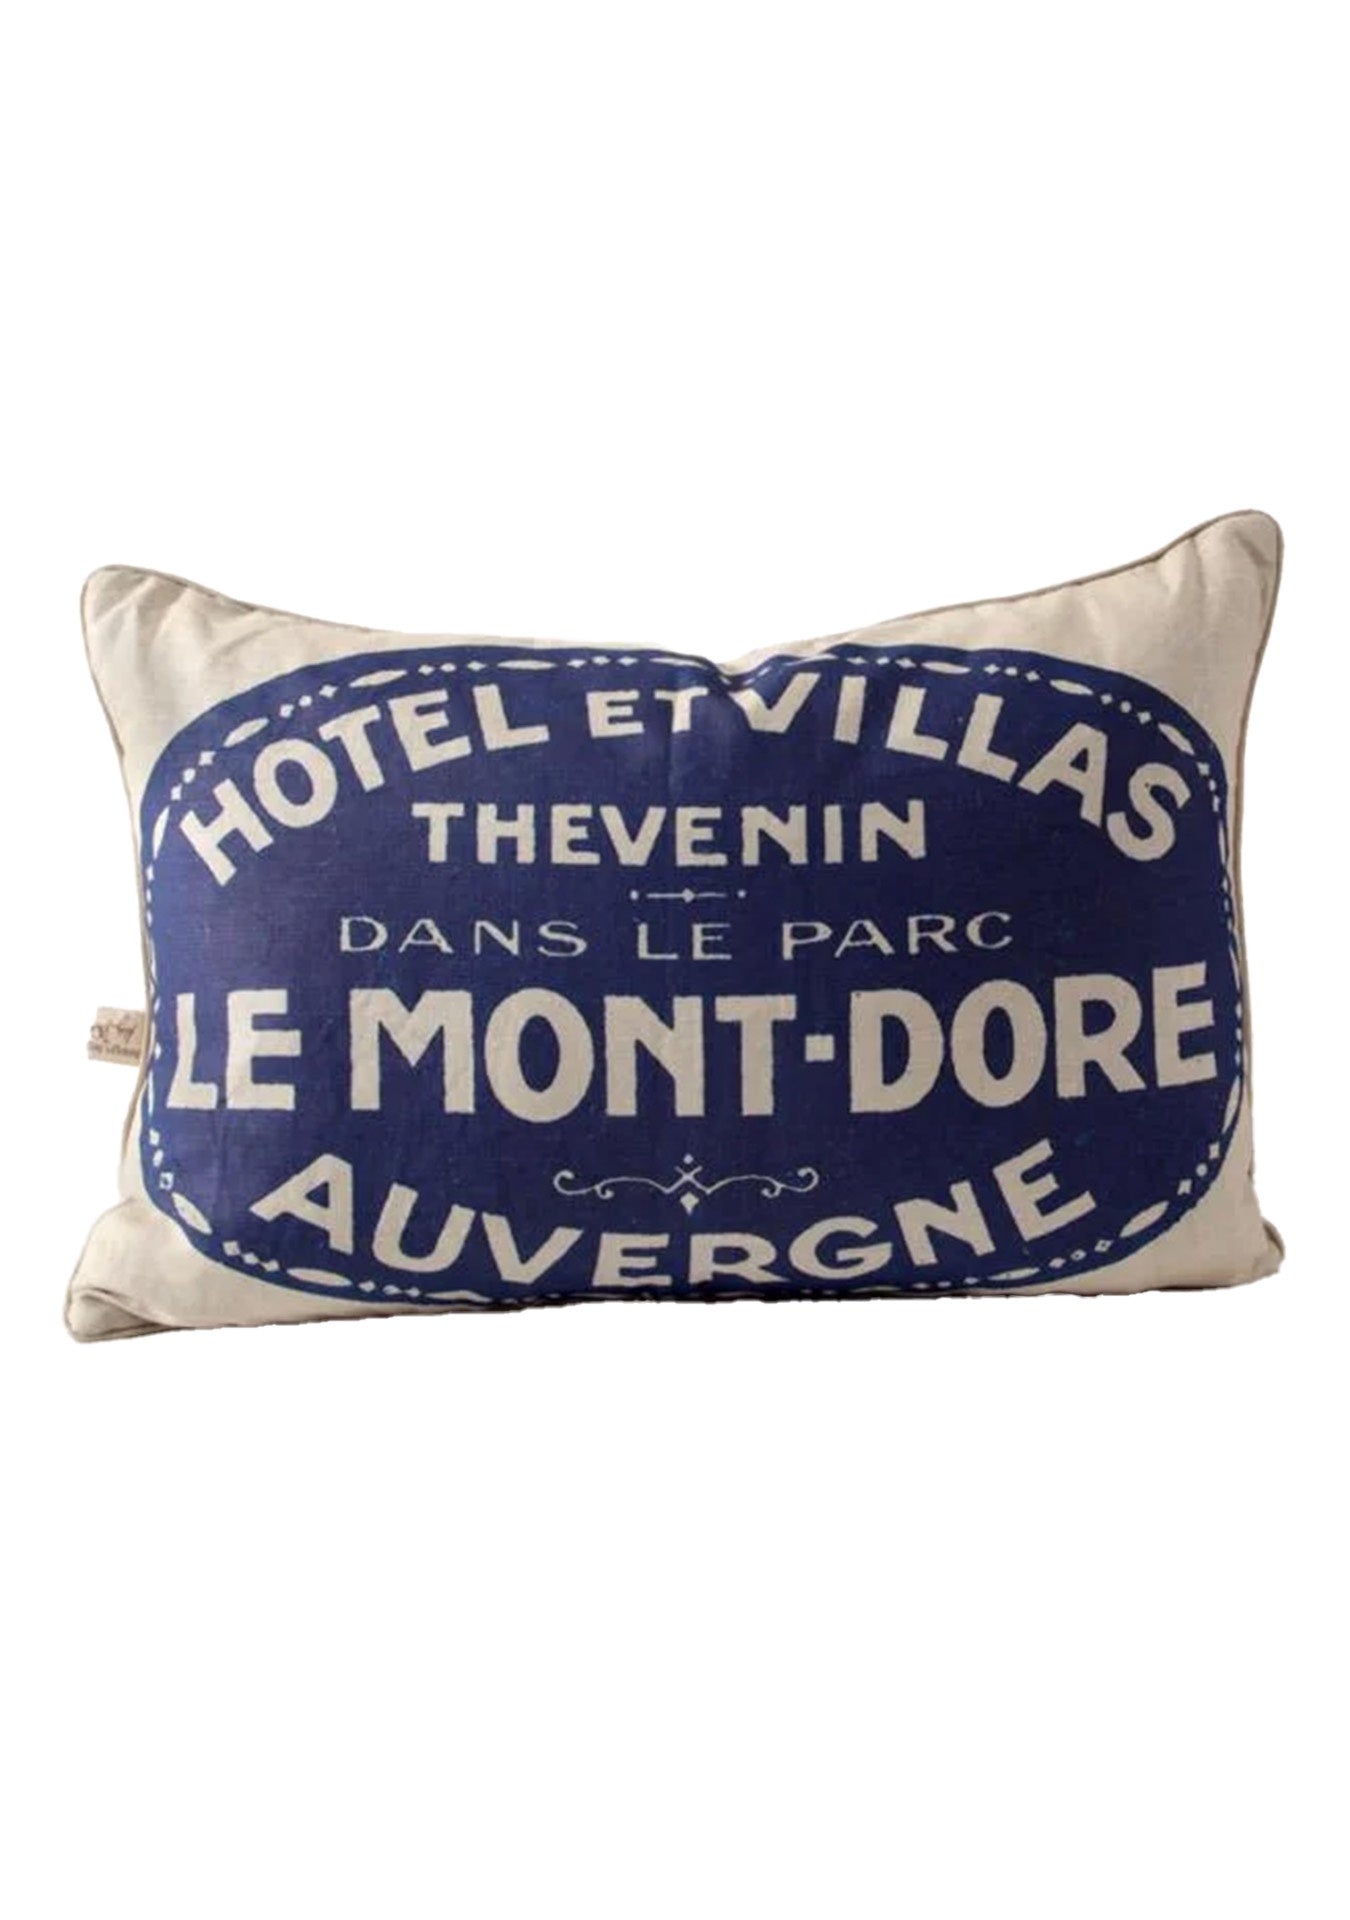 Le Mont-Dore Auvergne Pillow 17x24